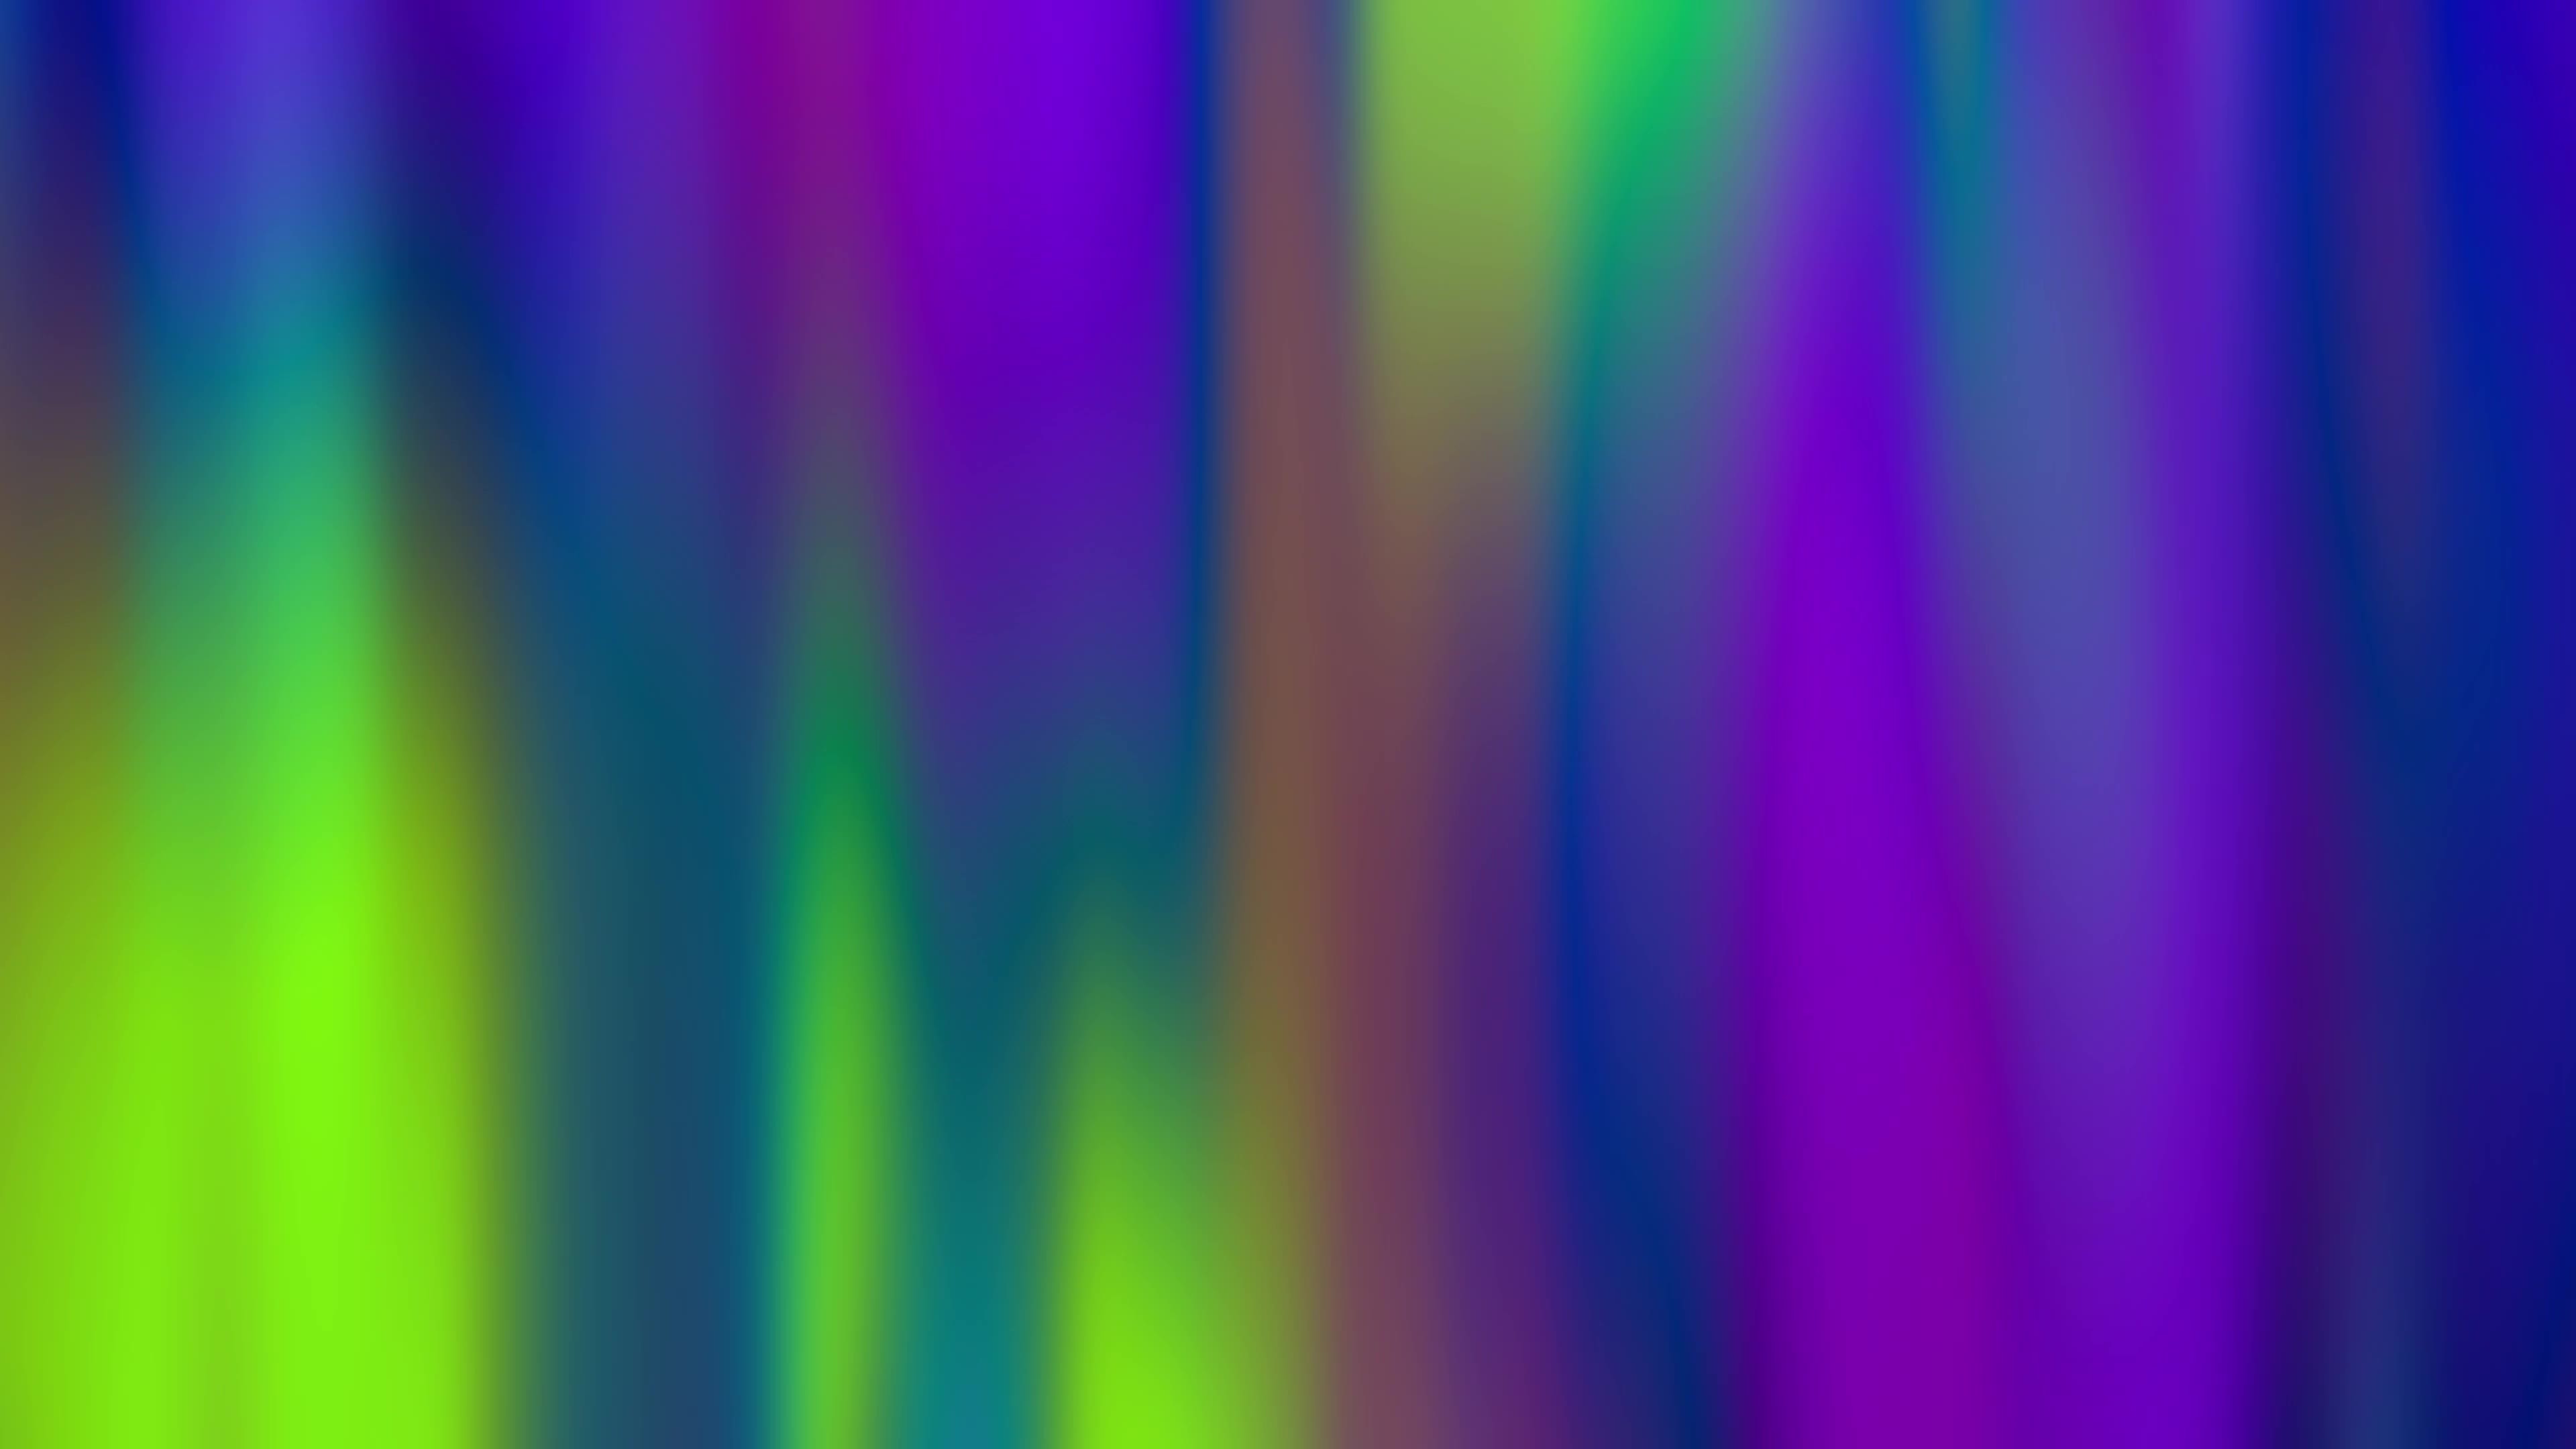 Nền gradient chuyển động màu sắc trên nền 4K: Với hình nền gradient chuyển động màu sắc trên nền 4K, bạn sẽ có một hình nền tuyệt đẹp với những màu sắc chuyển động mượt mà và độ phân giải cao. Hãy tận hưởng trải nghiệm tuyệt vời của màn hình 4K cùng với hình nền gradient chuyển động màu sắc đầy sức sống này!